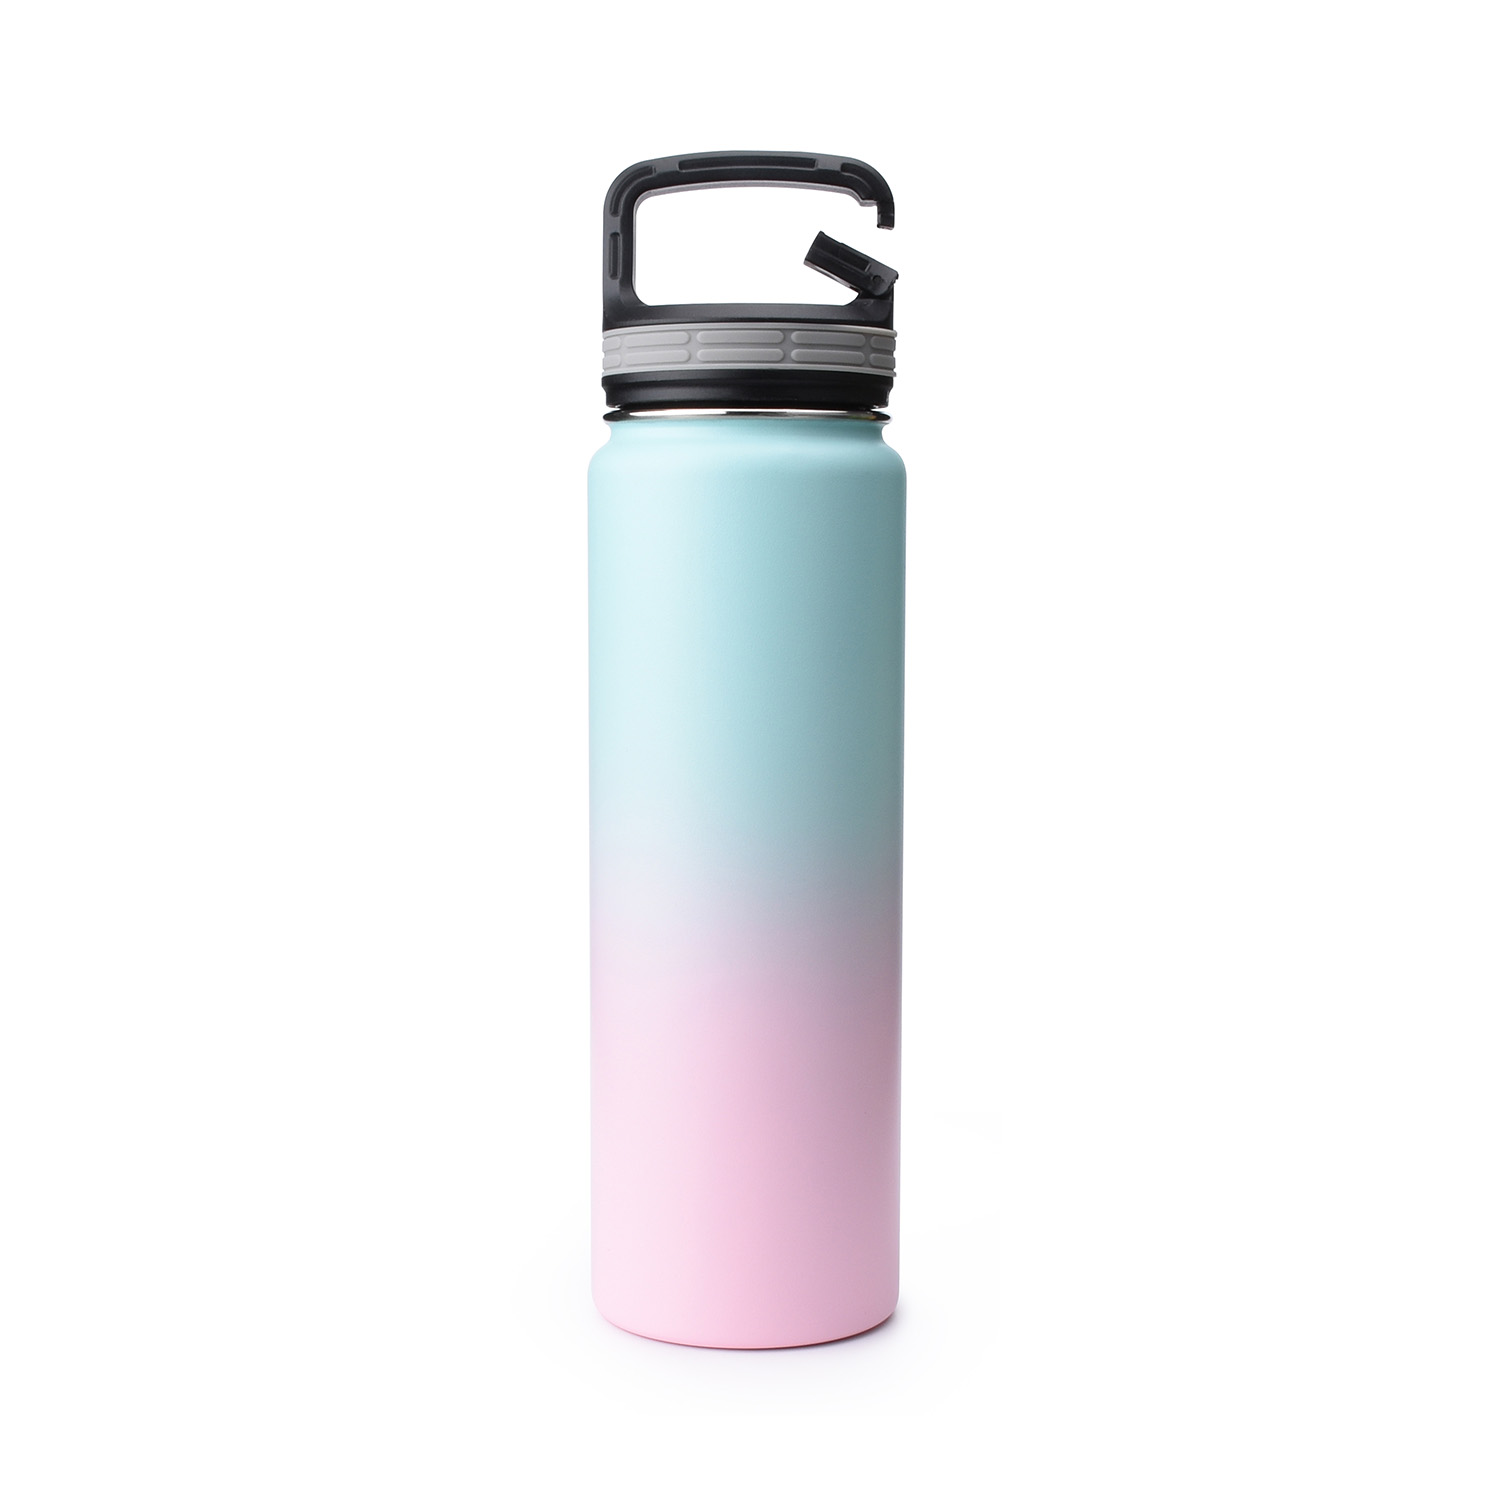 https://www.waterbottle.tech/wp-content/uploads/2021/10/Vacuum-Flask-water-bottle-blank-bubble-gum-Simple-Iron-s1124f1-2.jpg